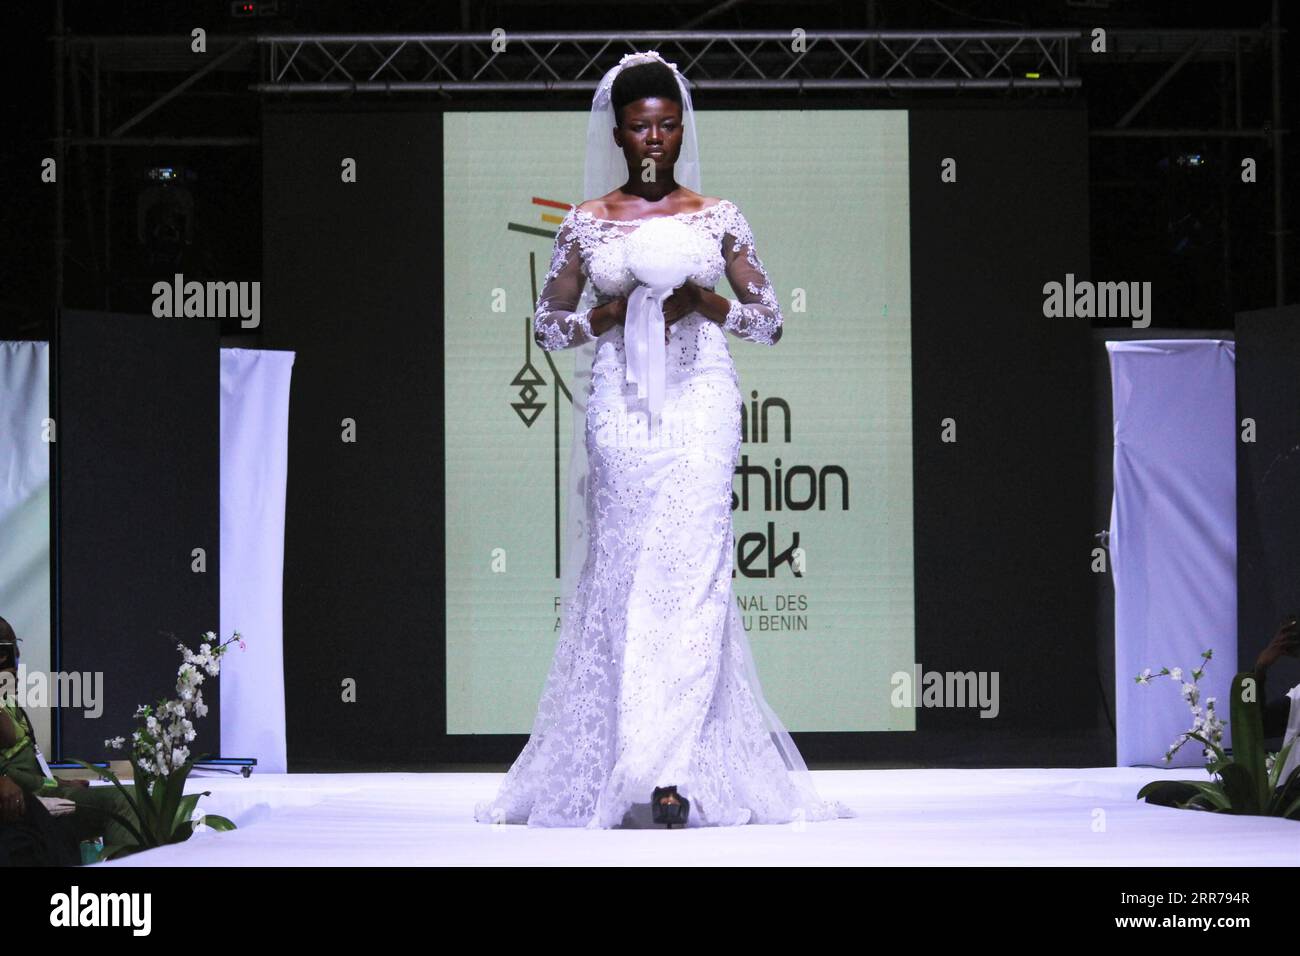 210321 -- COTONOU, 21. März 2021 -- Foto aufgenommen am 20. März 2021 zeigt ein Model, das ein Hochzeitskleid des togolesischen Designers Nado während der Benin Fashion Week in Cotonou, Benin, präsentiert. Foto von /Xinhua BENIN-COTONOU-FASHION SHOW SeraphinxZounyekpe PUBLICATIONxNOTxINxCHN Stockfoto